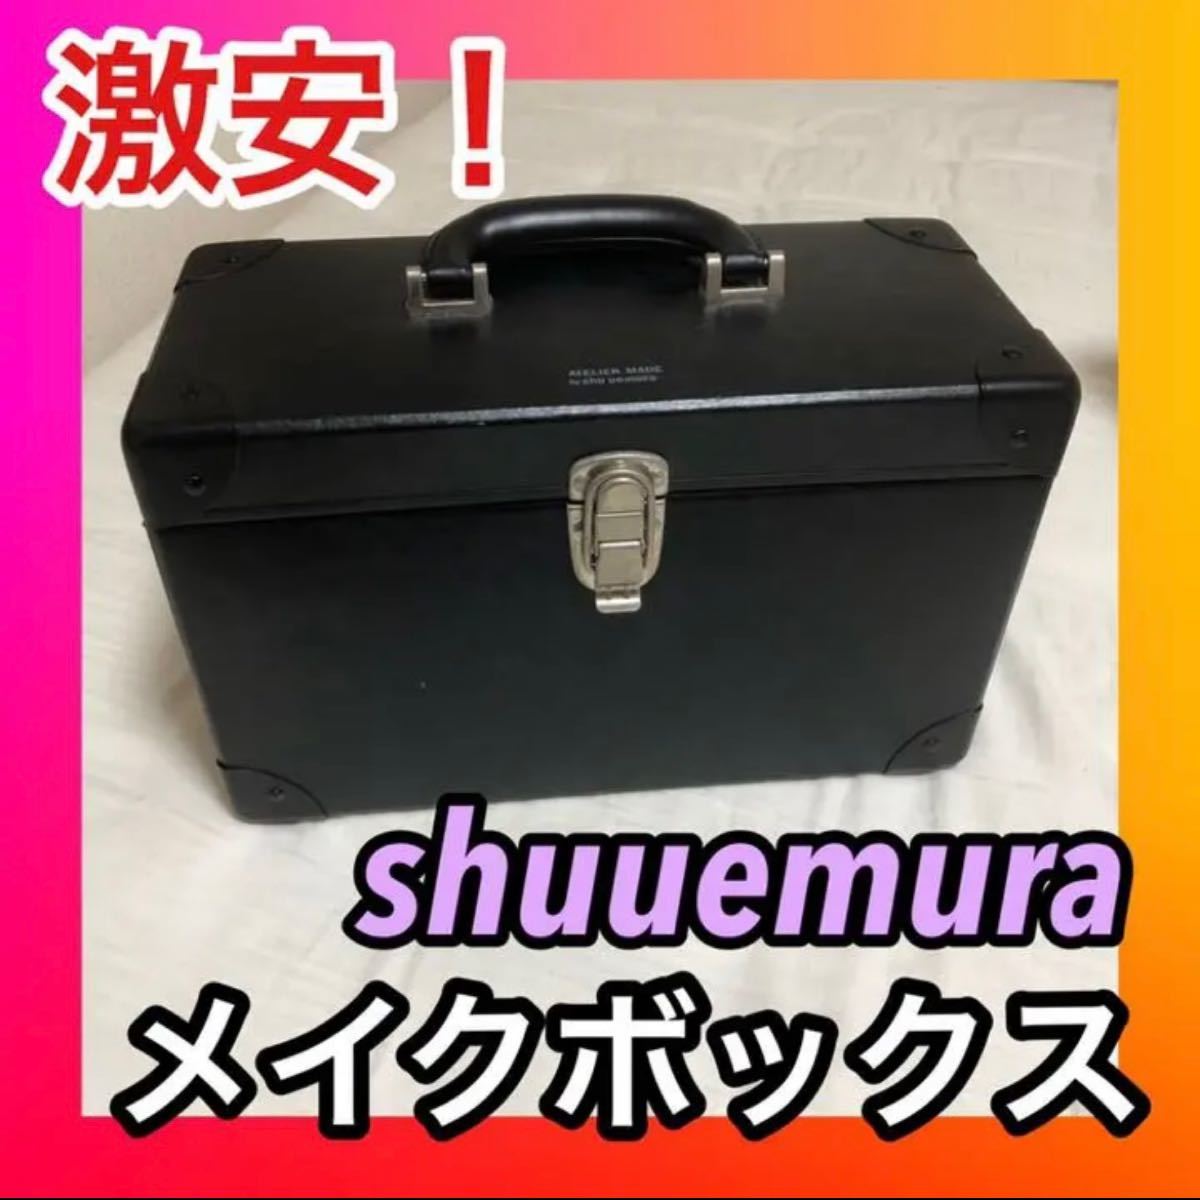 shuuemura メイクボックス-